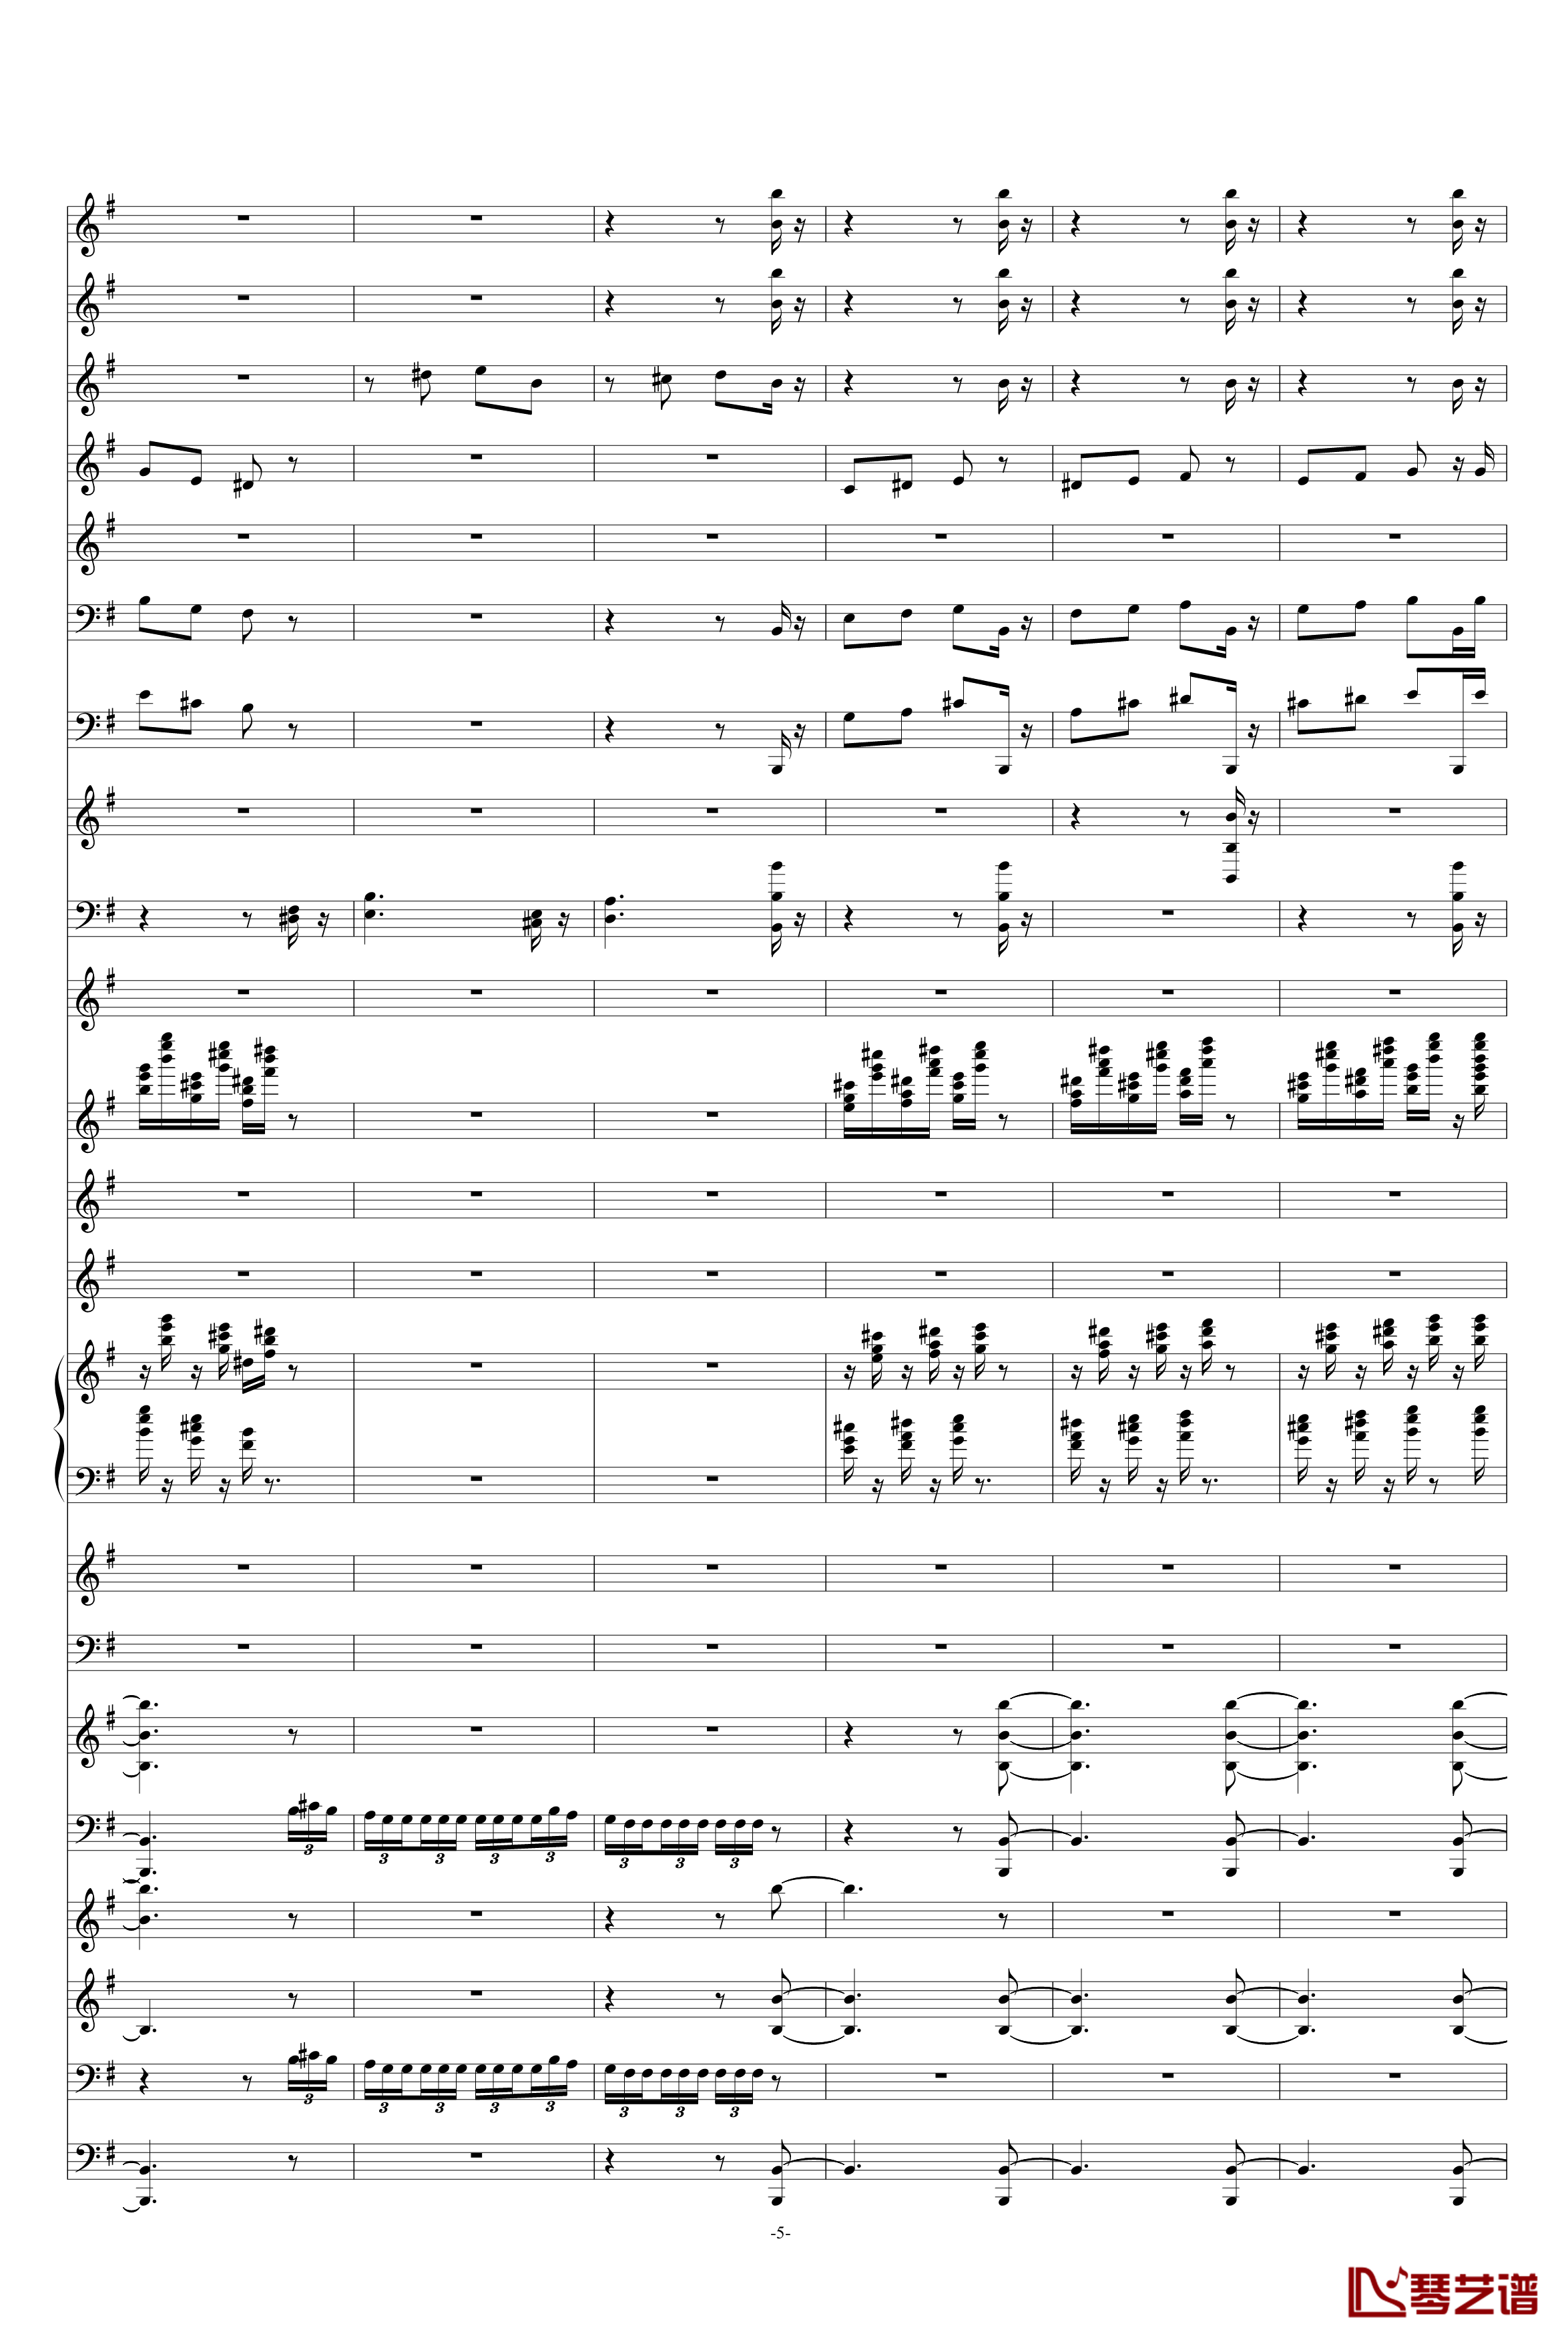 糖果仙子舞曲钢琴谱-柴科夫斯基-Peter Ilyich Tchaikovsky5